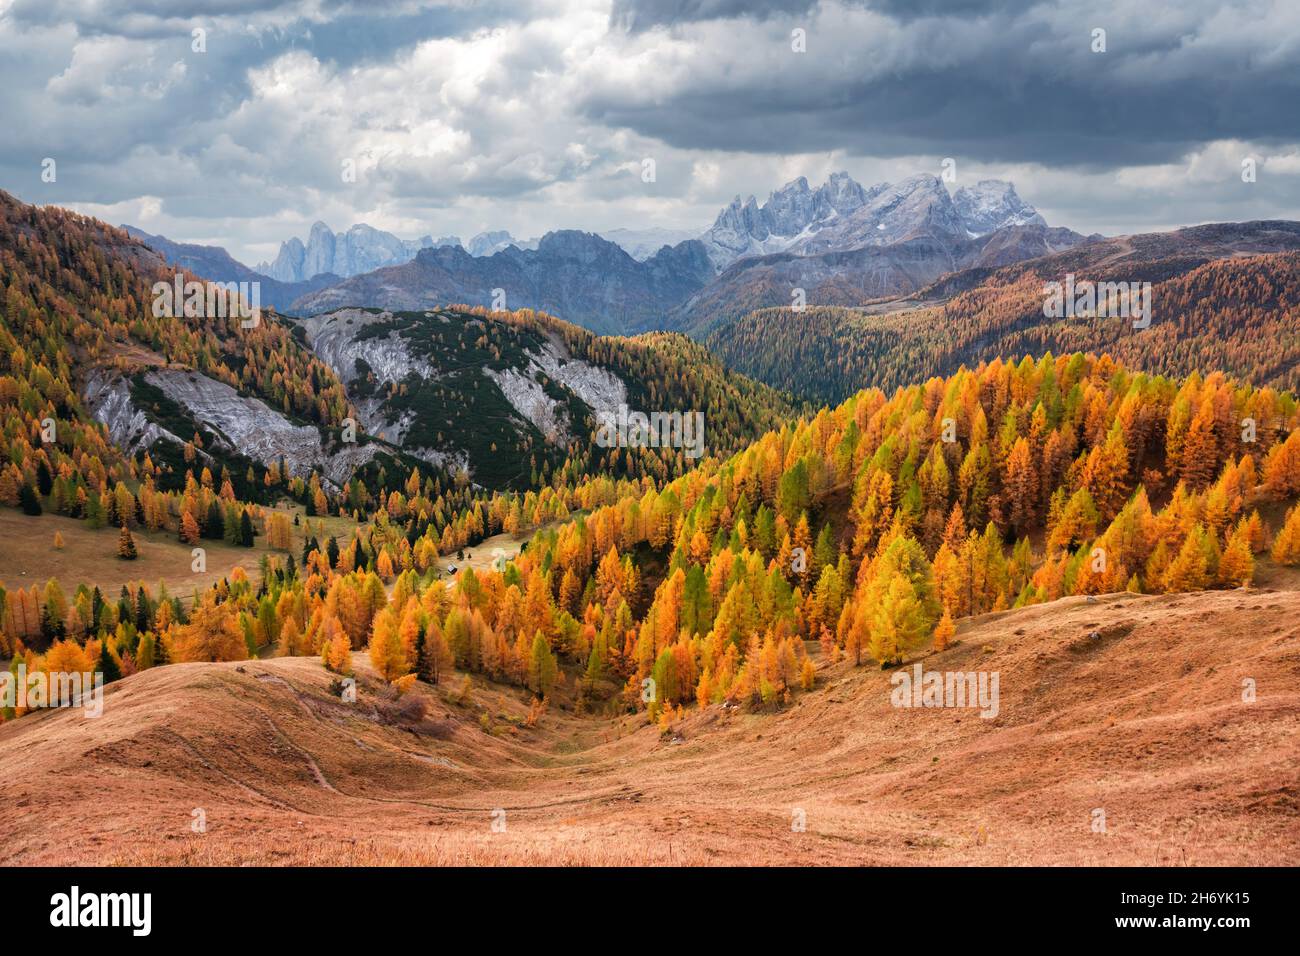 Unglaublicher Herbstblick im Valfreda-Tal in den italienischen Dolomiten. Gelbes Gras, orange Lärchen Wald und schneebedeckte Berge Gipfel auf dem Hintergrund. Dolomiten, Italien. Landschaftsfotografie Stockfoto